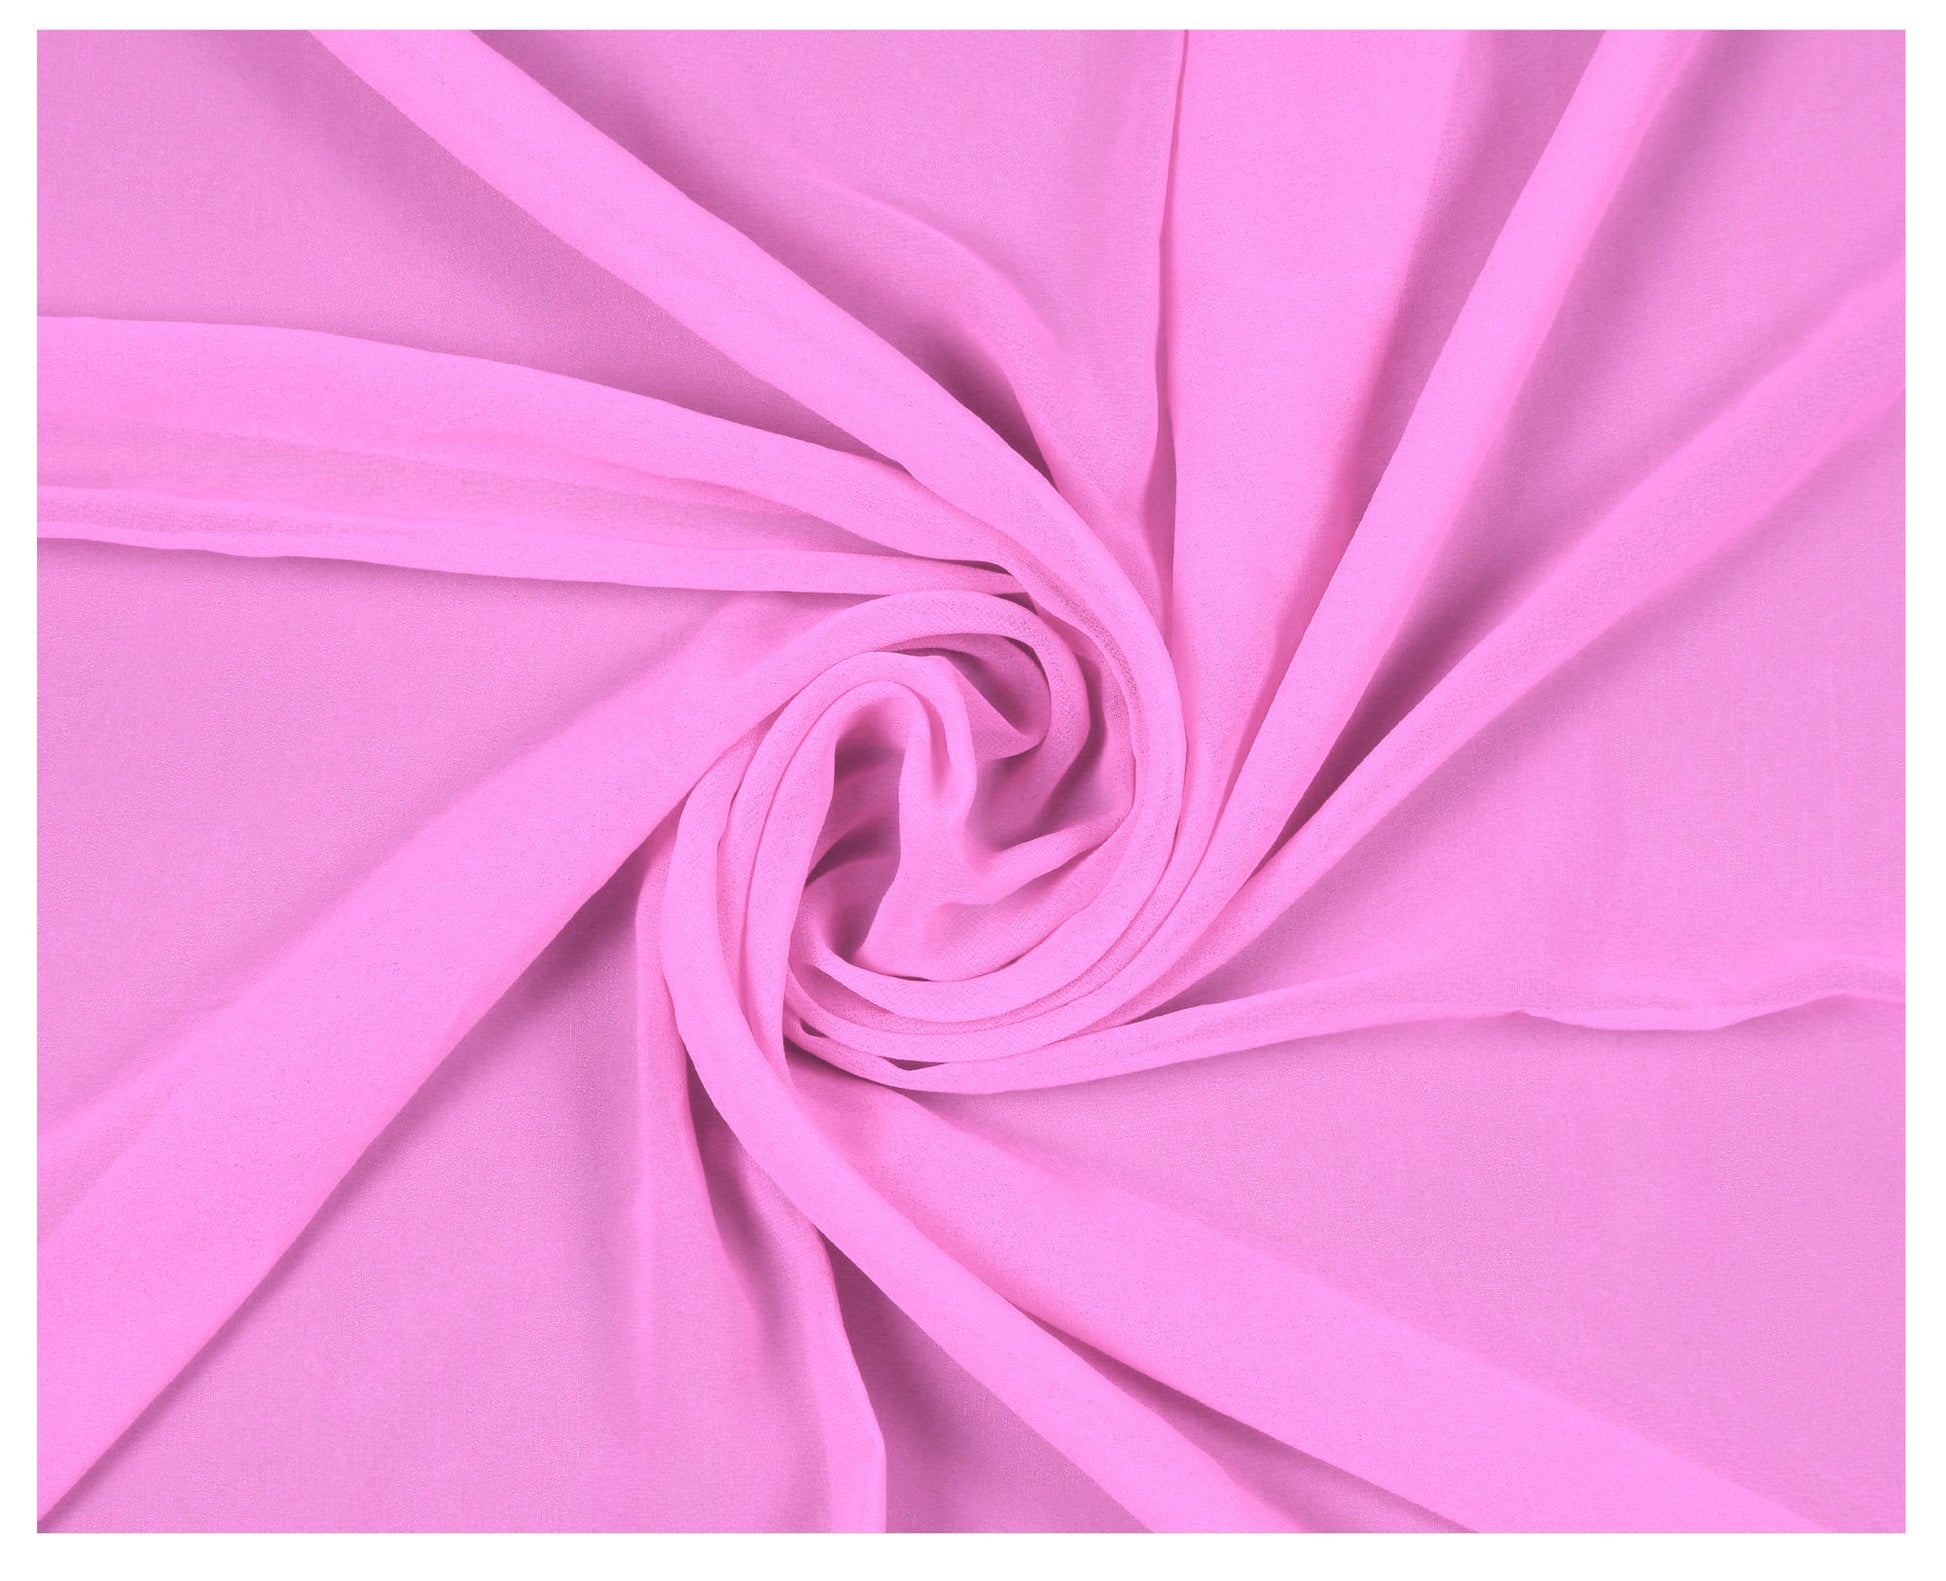 Bubblegum Pink,4b918ab7-4e5d-4039-9211-55da936af29b